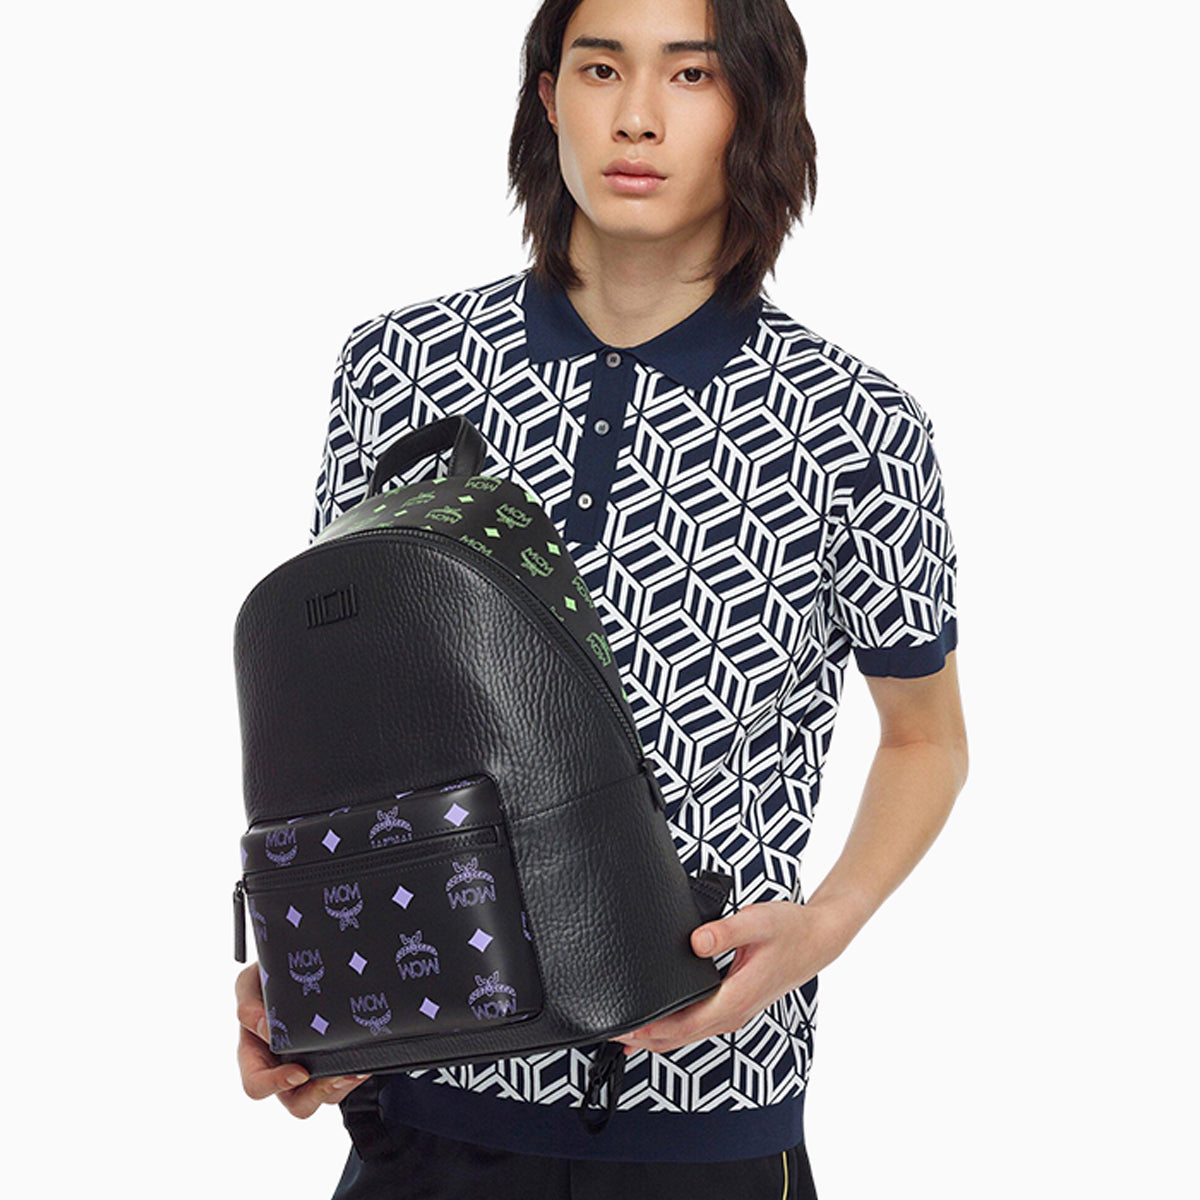 mcm-mens-stark-splash-logo-leather-backpack-mmkcssx02u6001